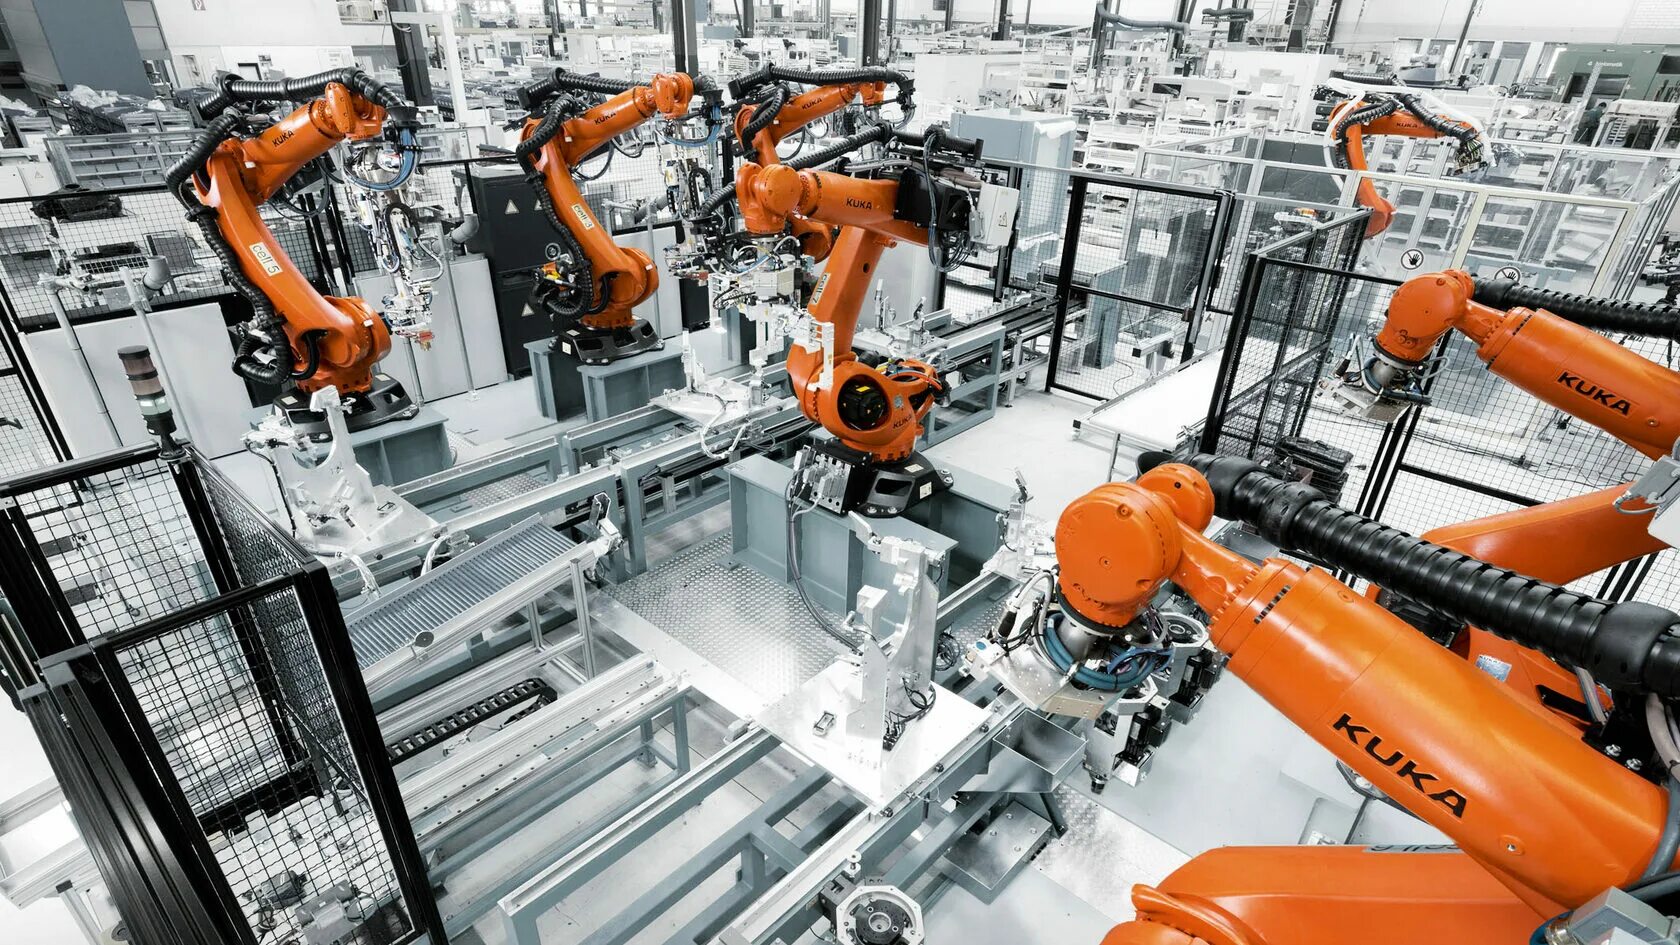 3д профессии в современном производстве. Промышленные роботы. Механизация и автоматизация производства. Роботы в машиностроении. Механизация и автоматизация производственных процессов.